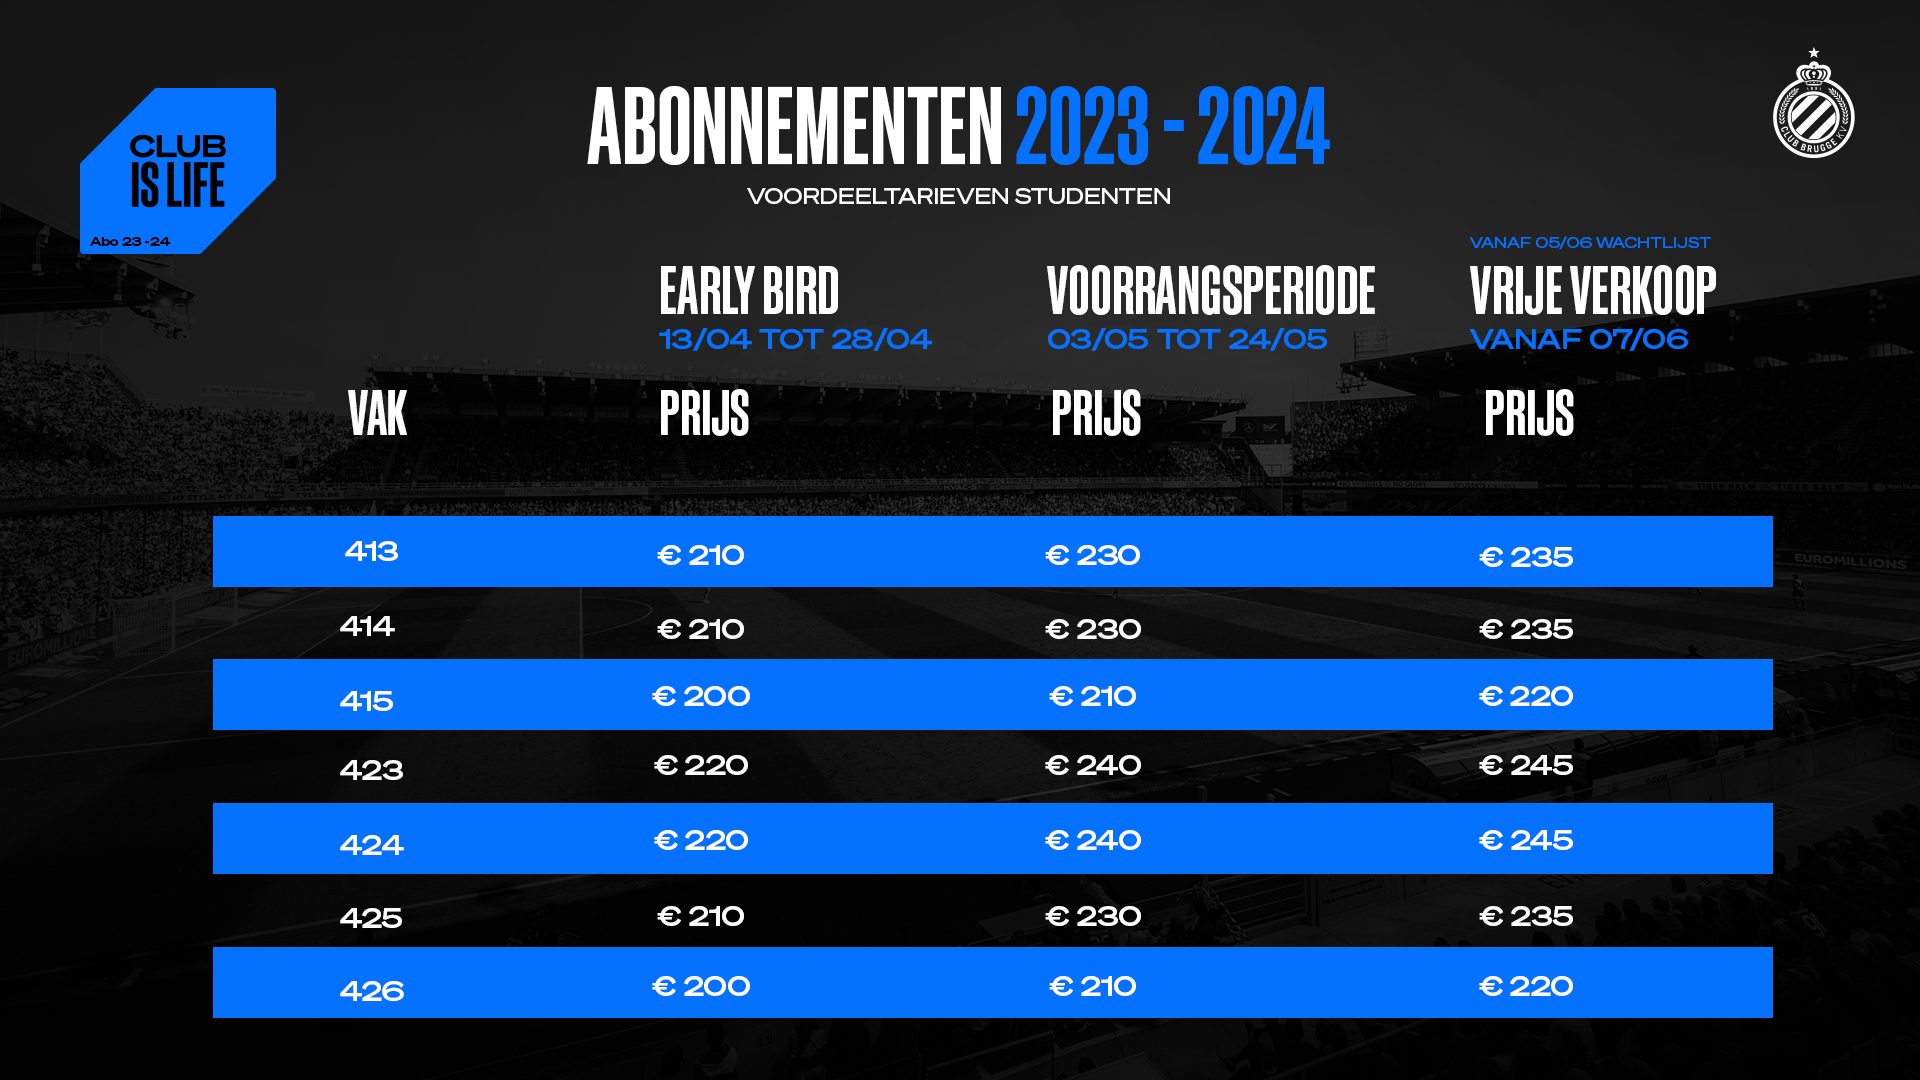 20230406_Abonnementen_Prijzen_Voordeel_ZUID_Students_1920x1080.png